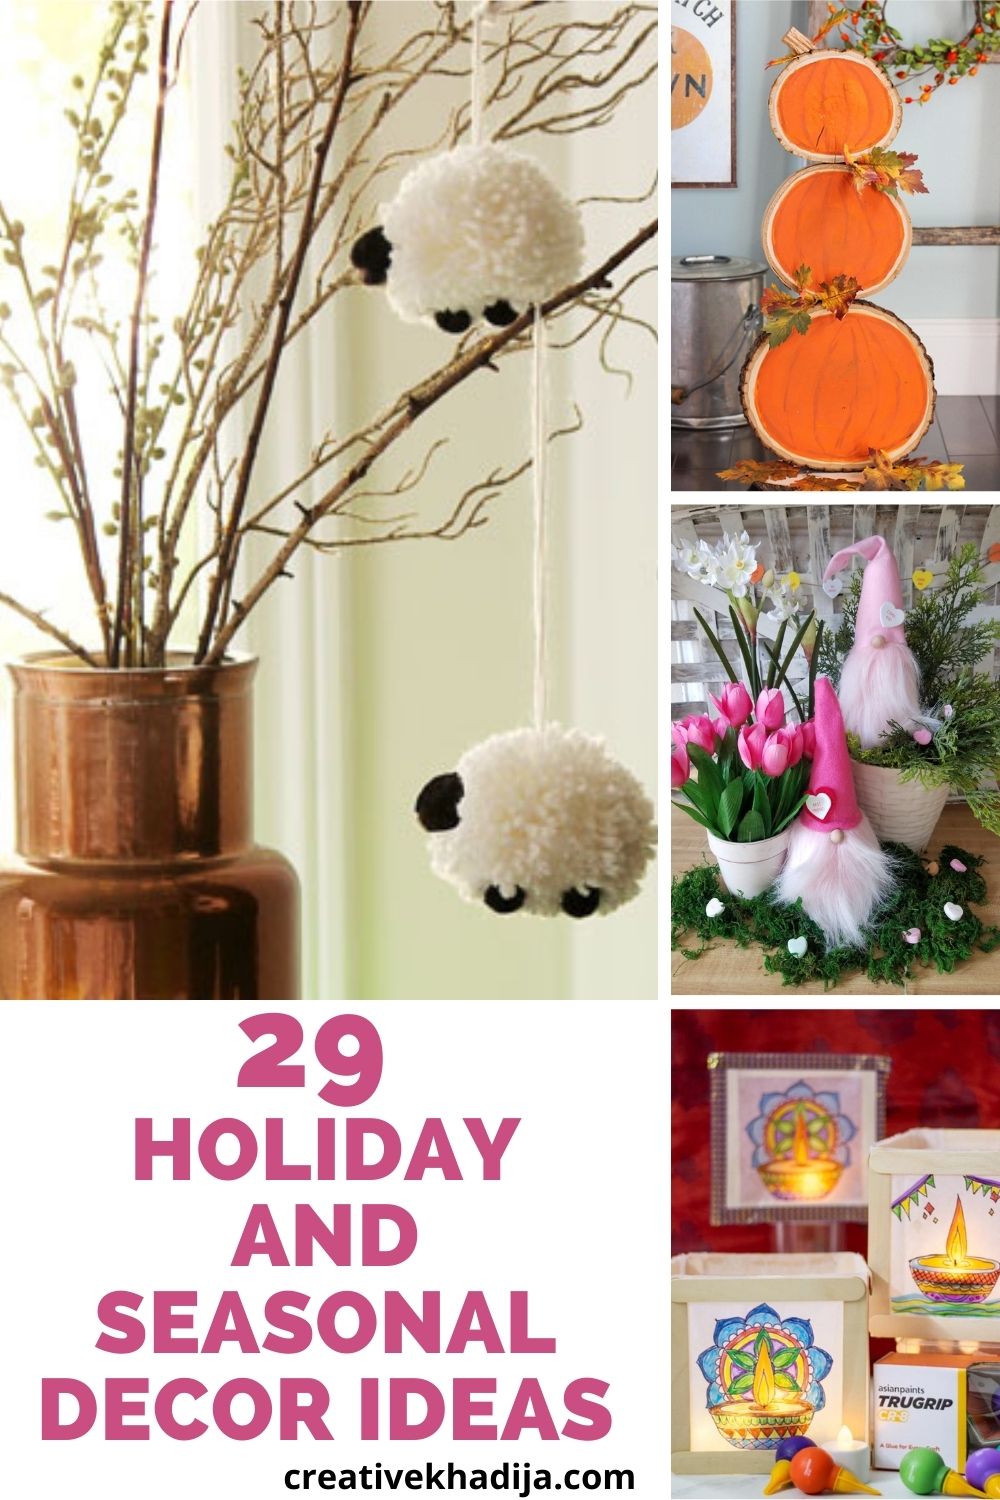 29 Holiday and Seasonal Decor Ideas